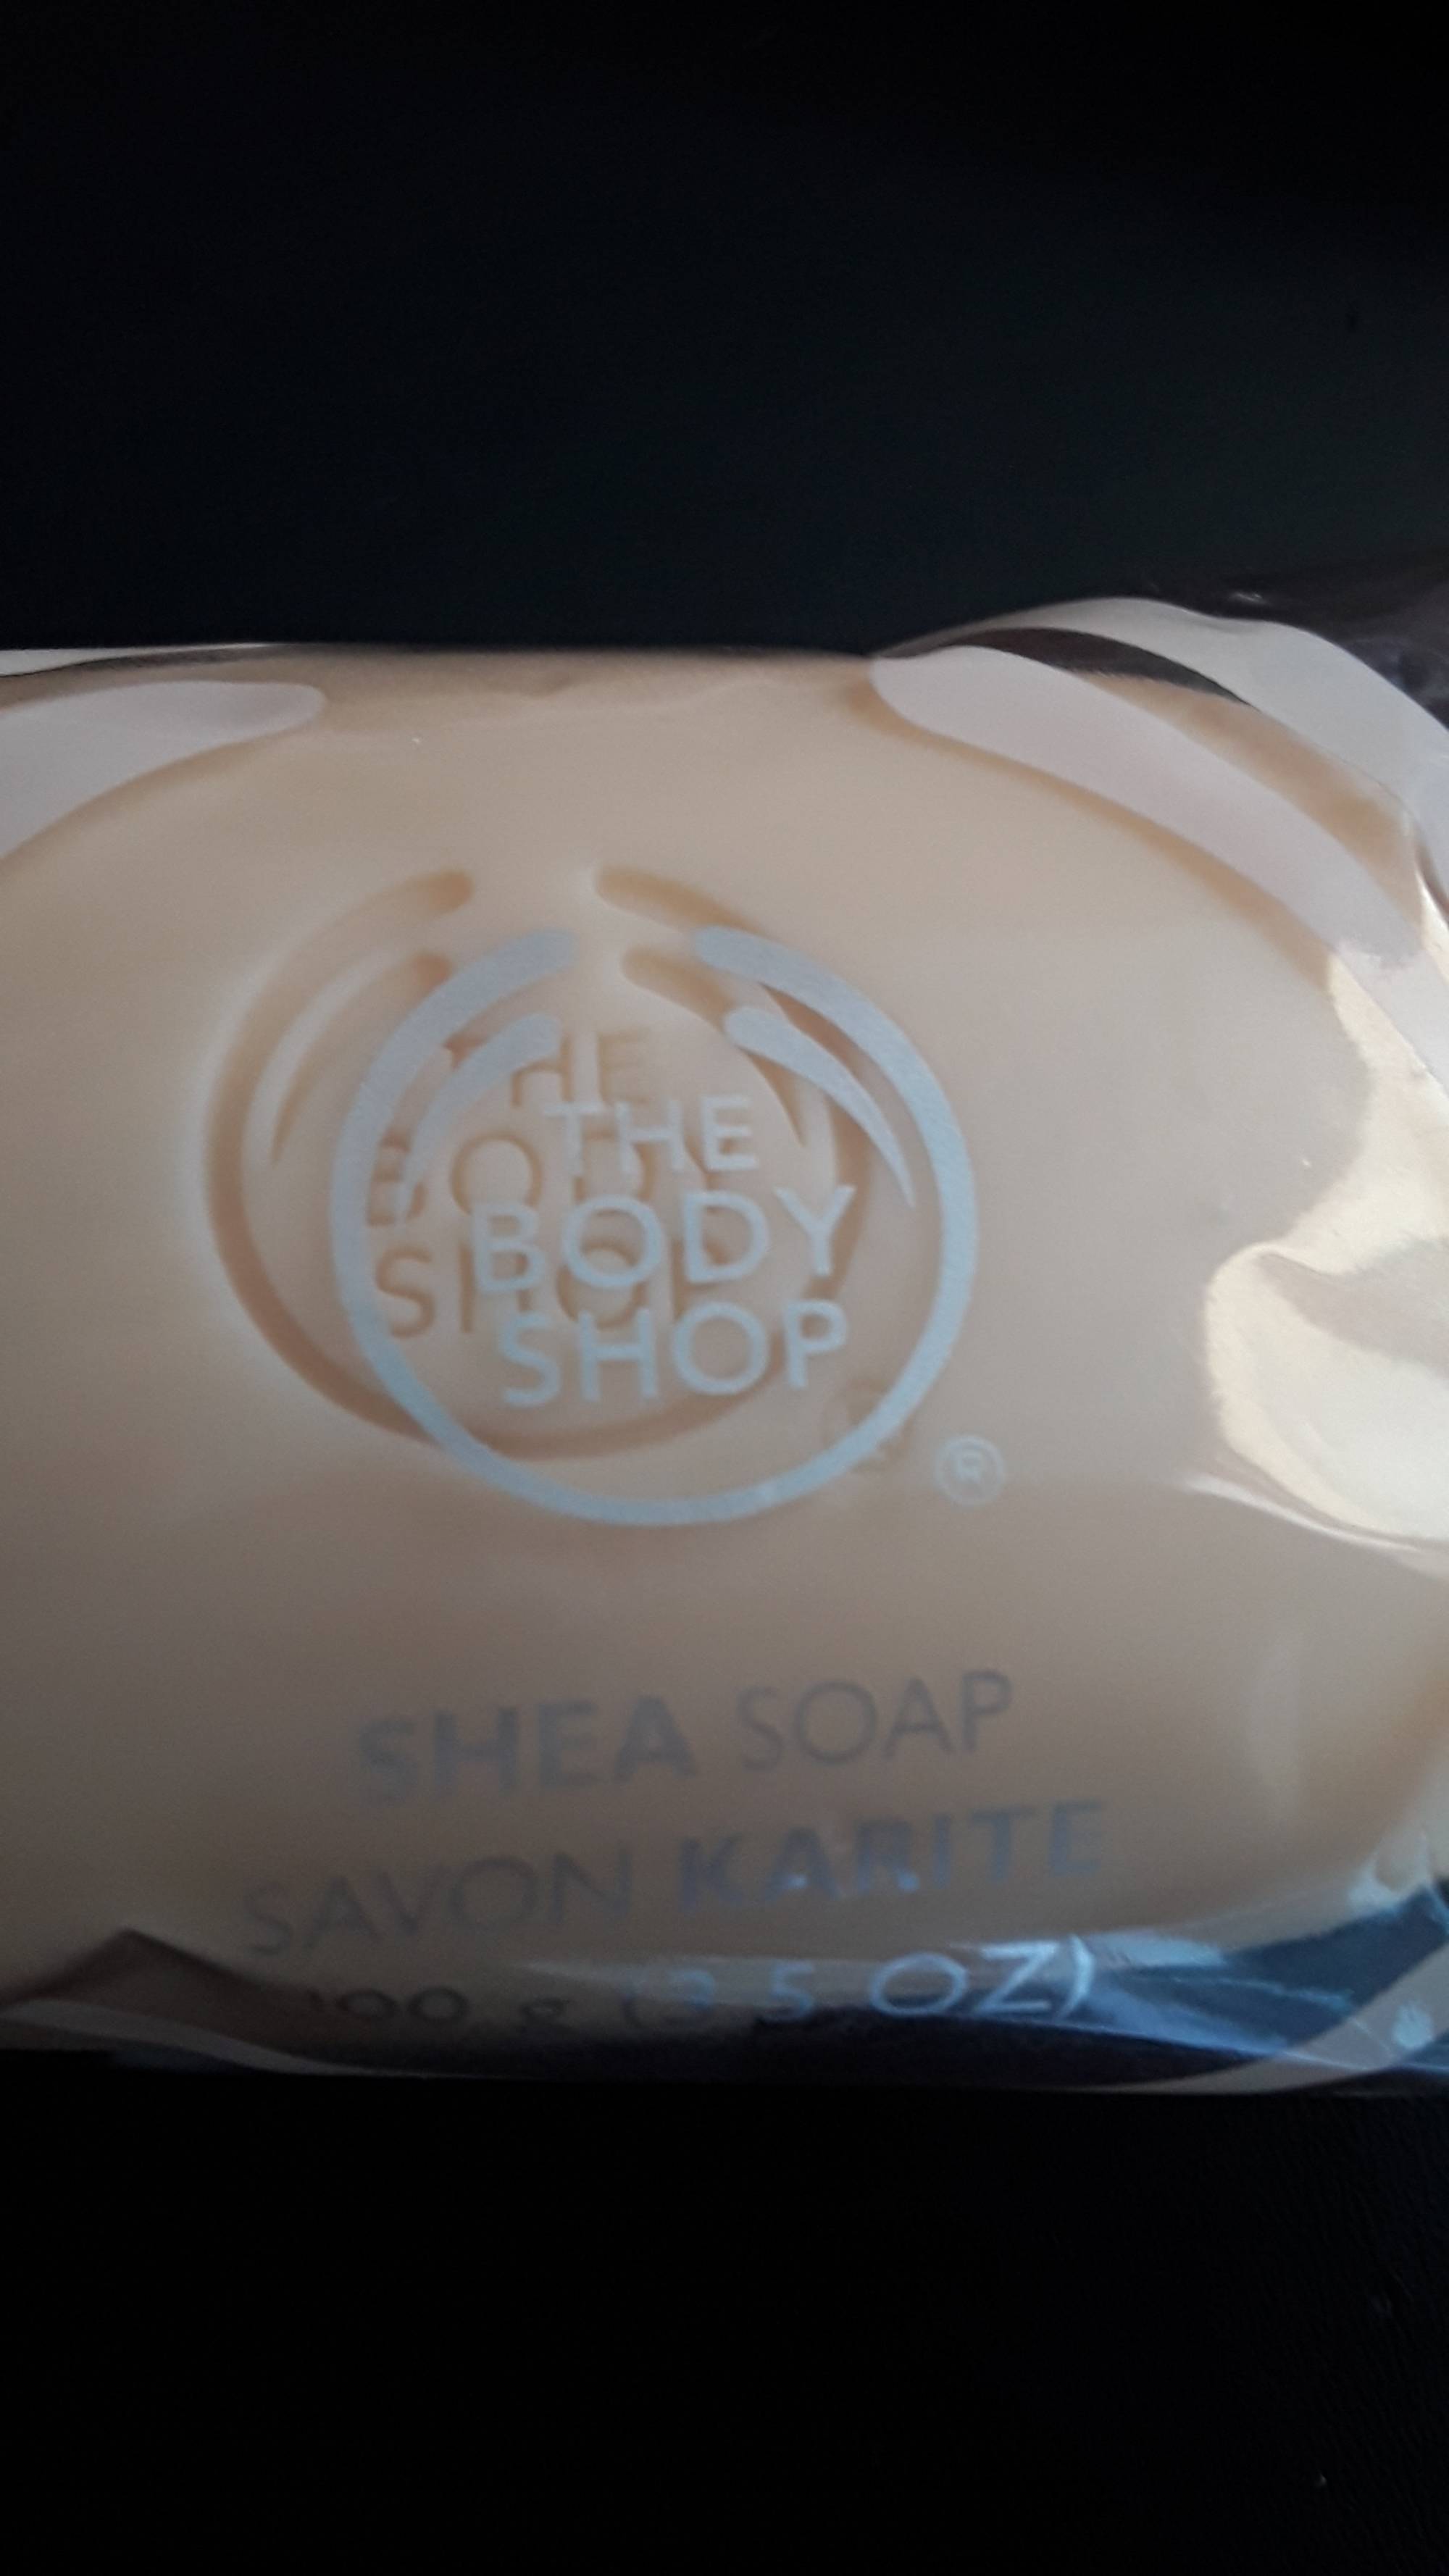 THE BODY SHOP - Shea sop - Savon karité